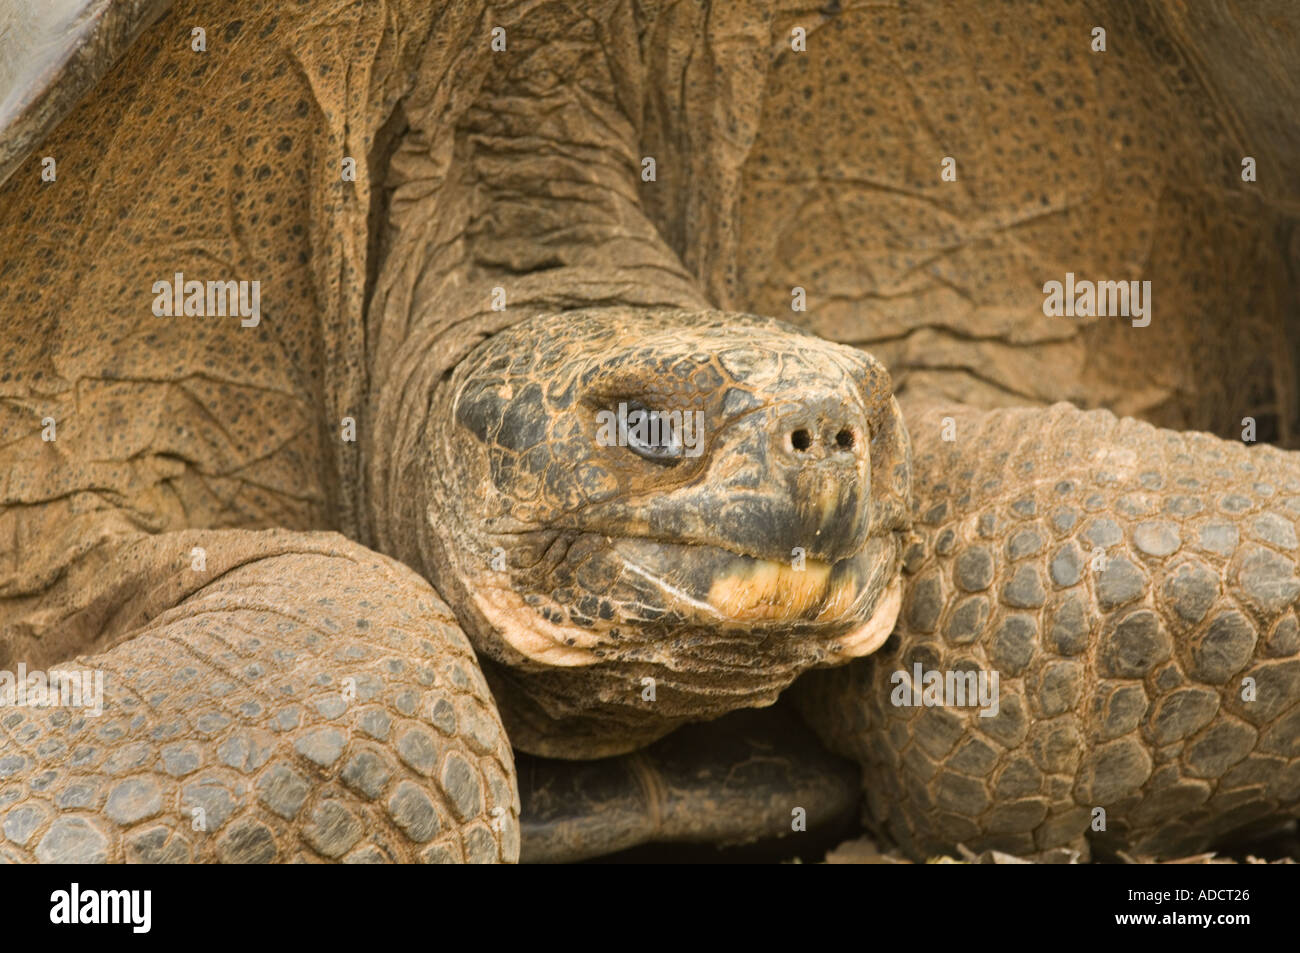 La tortuga gigante de Galápagos, Geochelone elephantopus, Islas Galápagos, Ecuador, Sudamérica Foto de stock